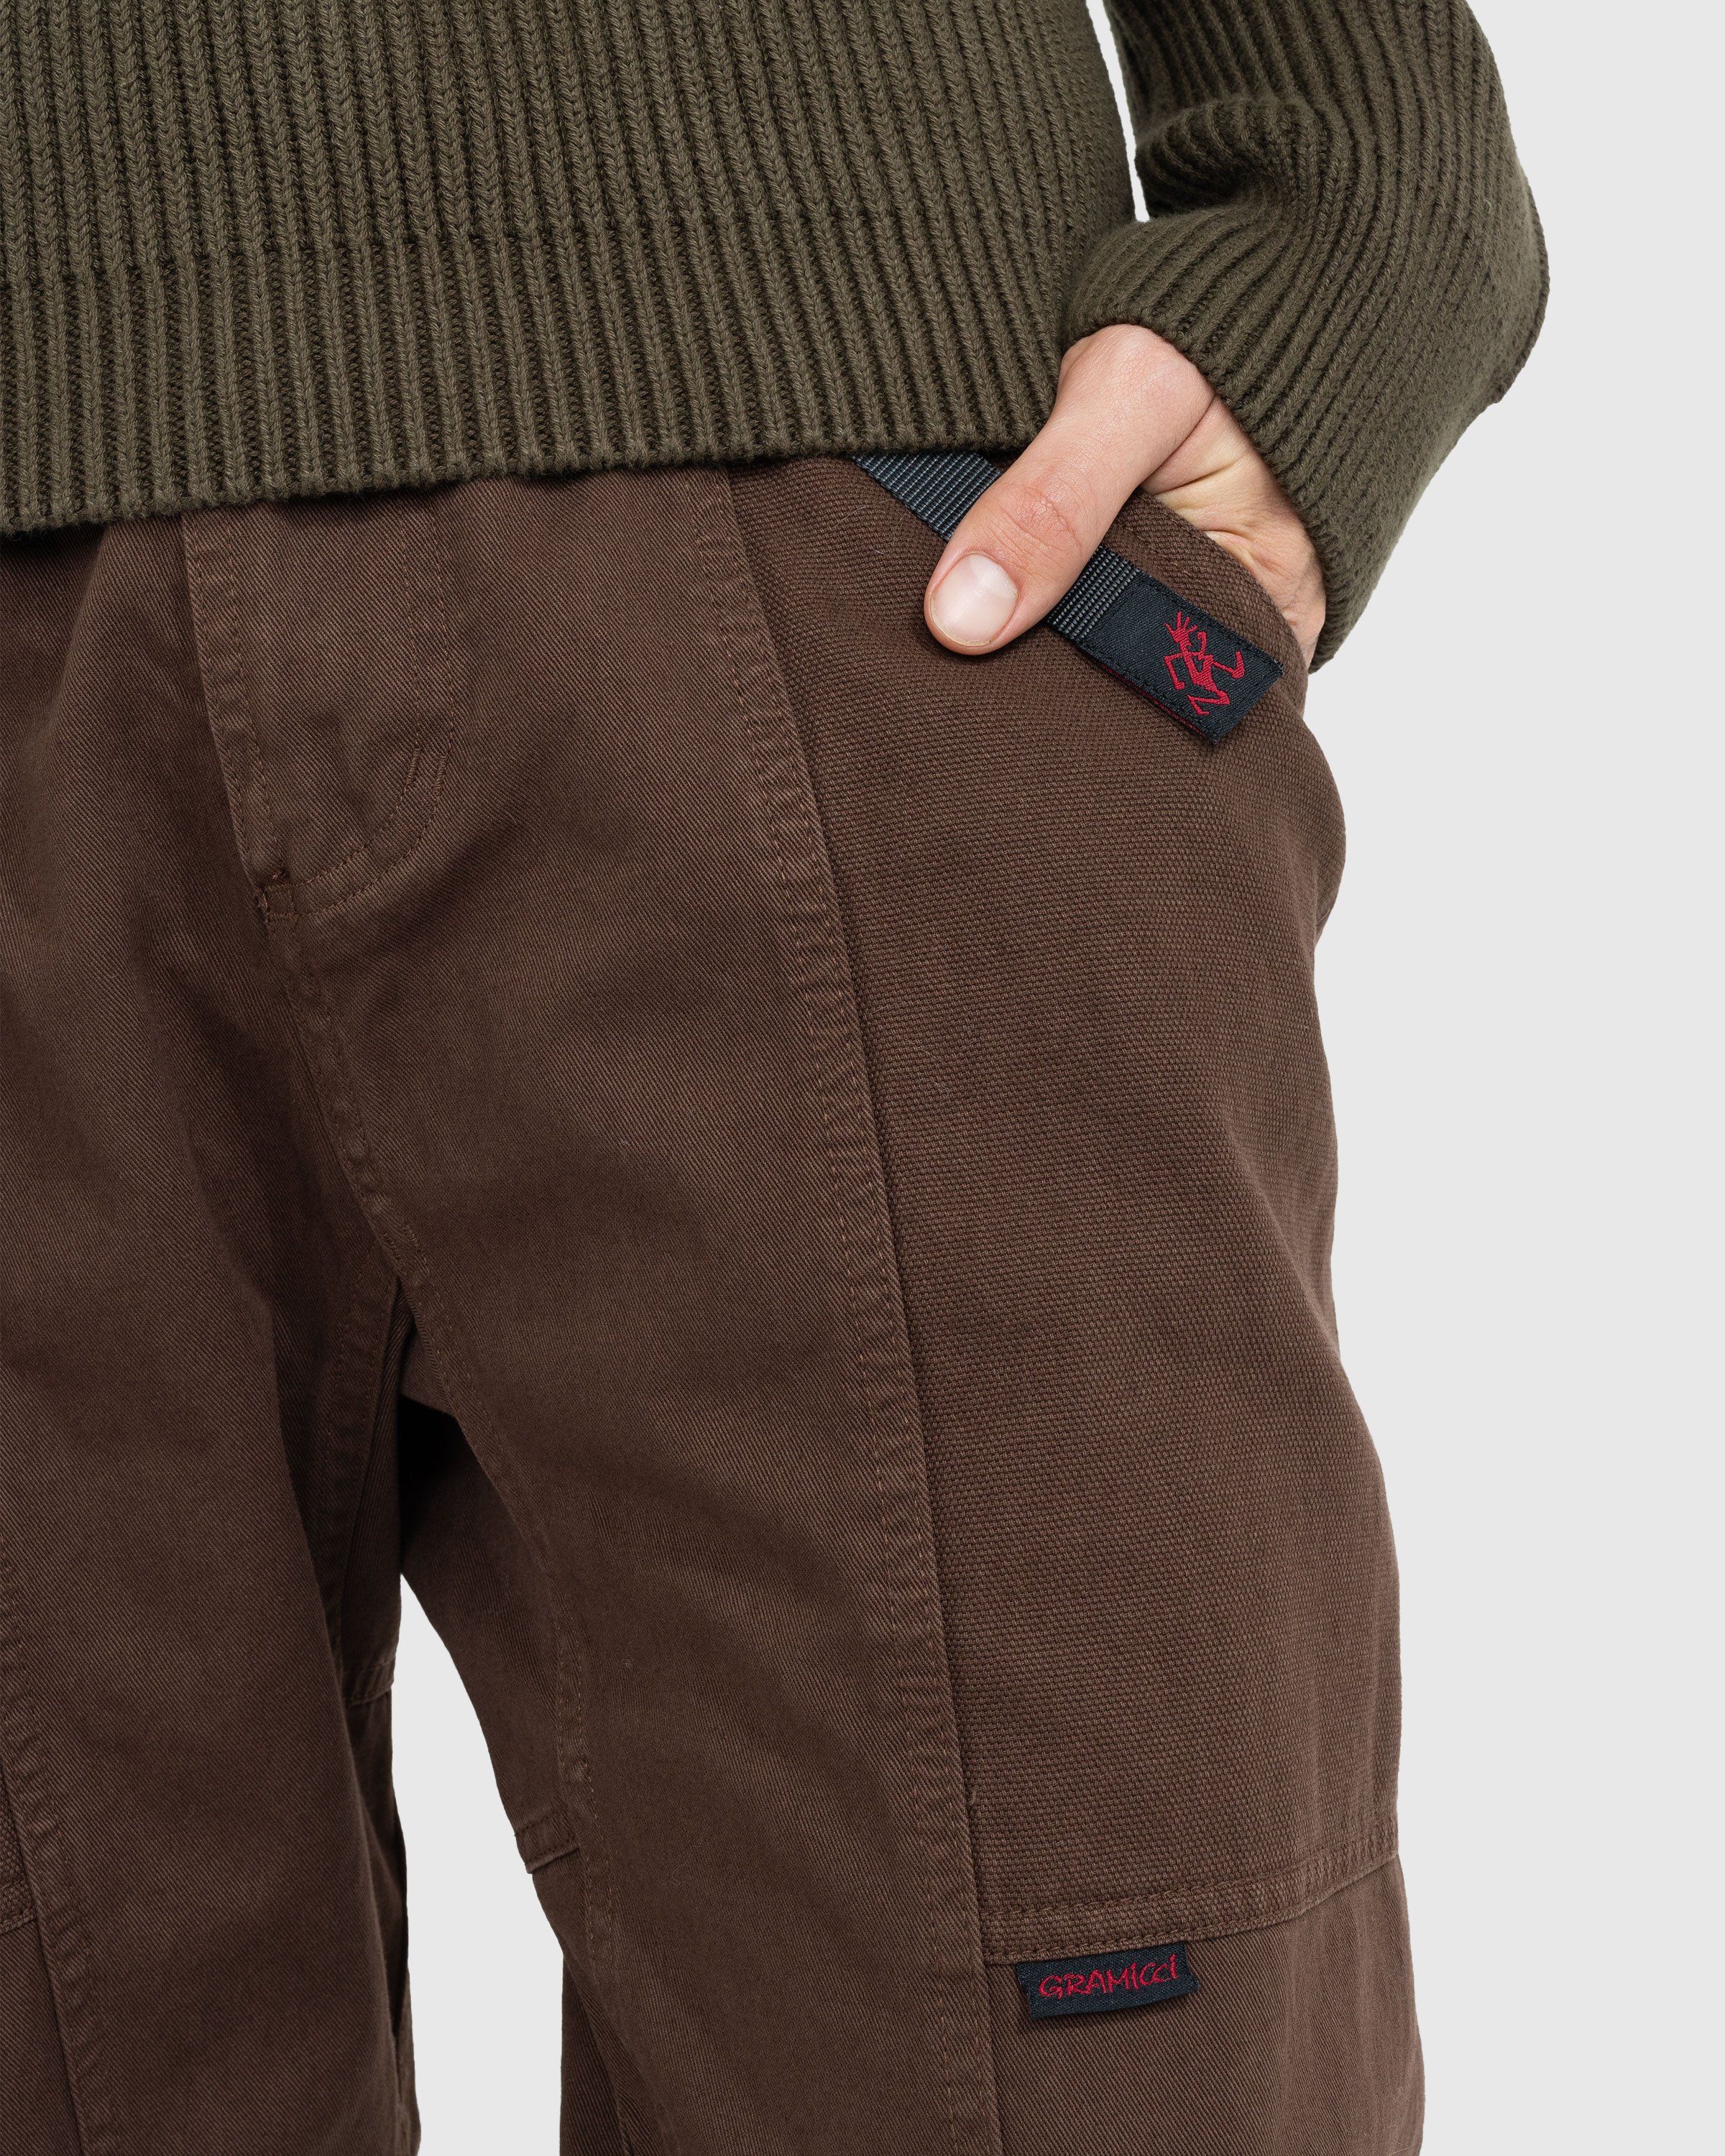 Gramicci - GADGET PANT - Clothing - Brown - Image 5